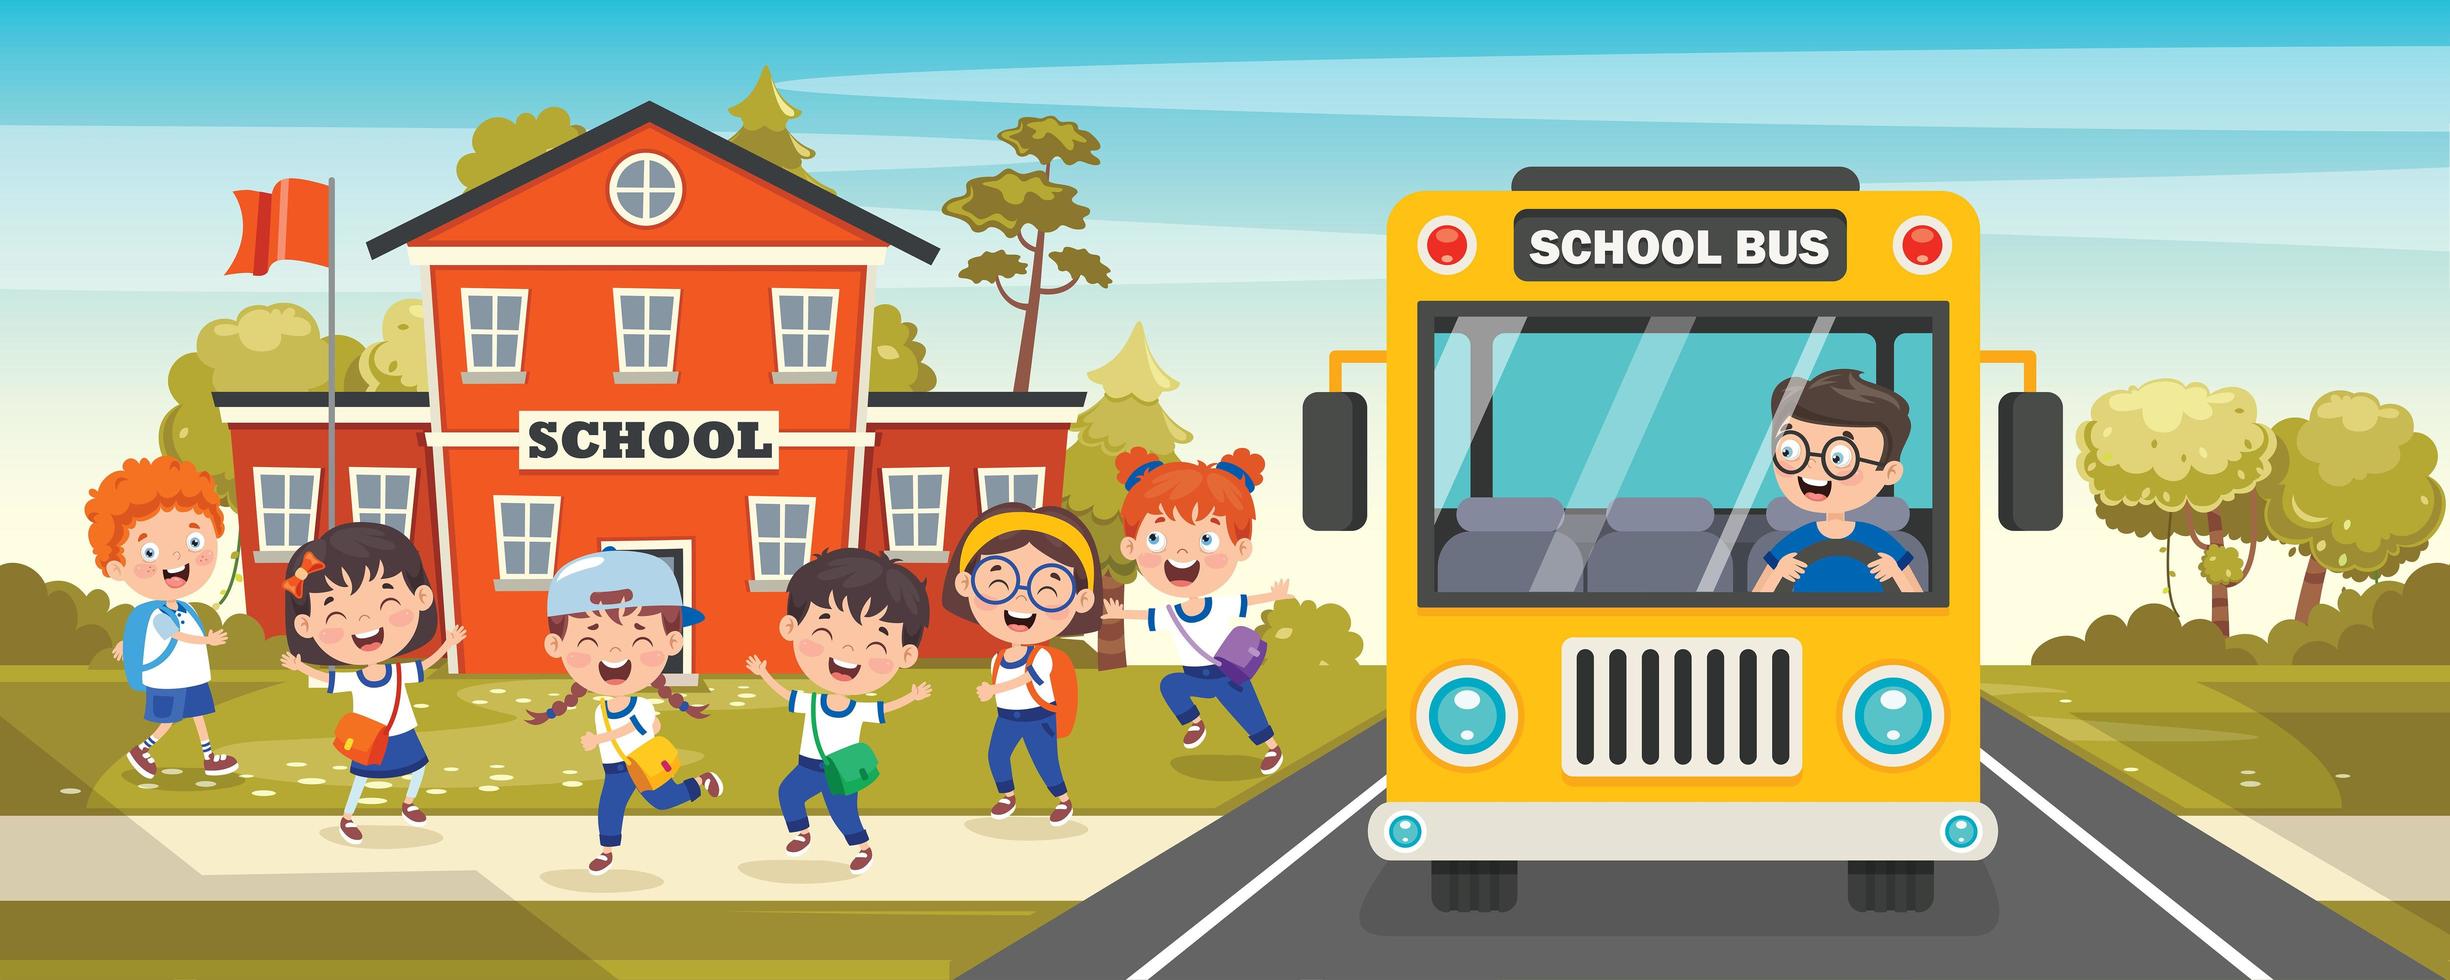 Schulbusfront mit Schulkindern verlassen vektor